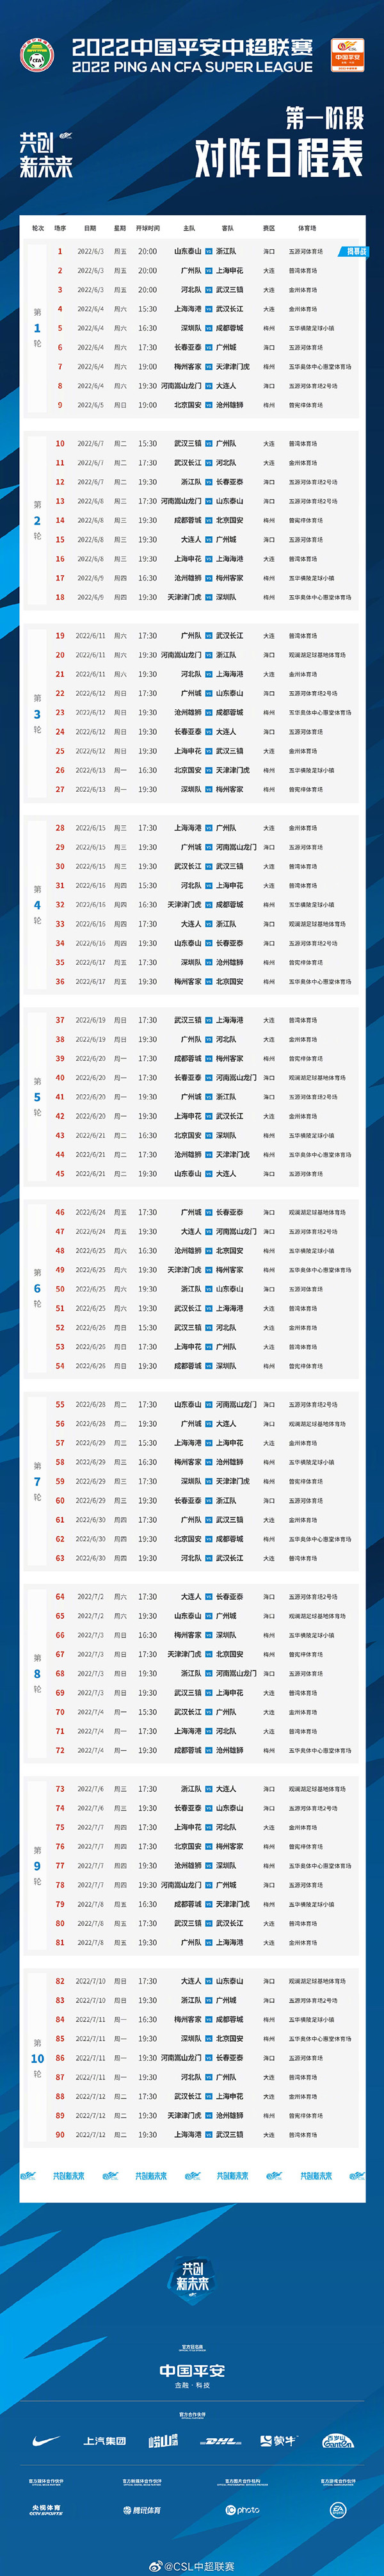 2022赛季中国足球超级联赛赛程表